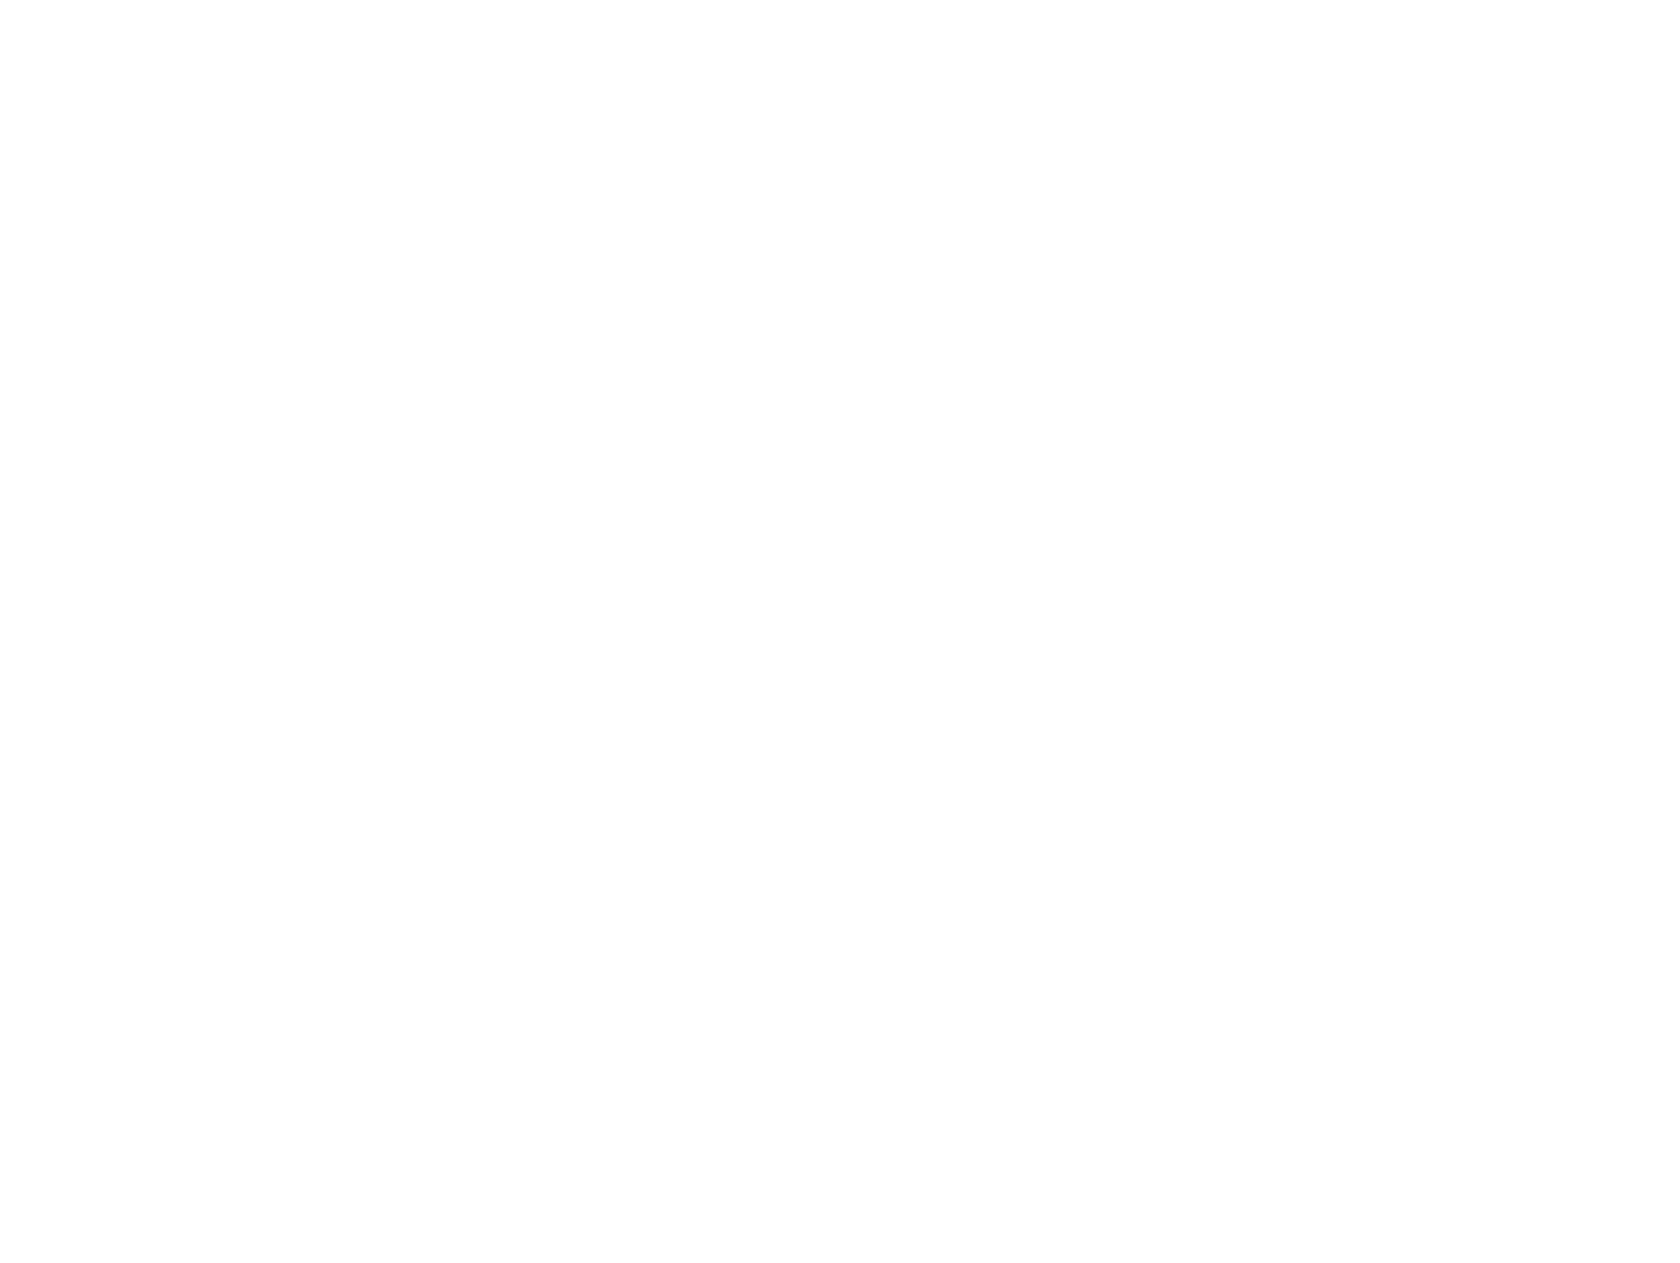 Винтажные ламповые часы на советских газоразрядных индикаторах ИН-12. Корпус изготовлен из древесины клёна и украшен натуральным шпоном амаранта